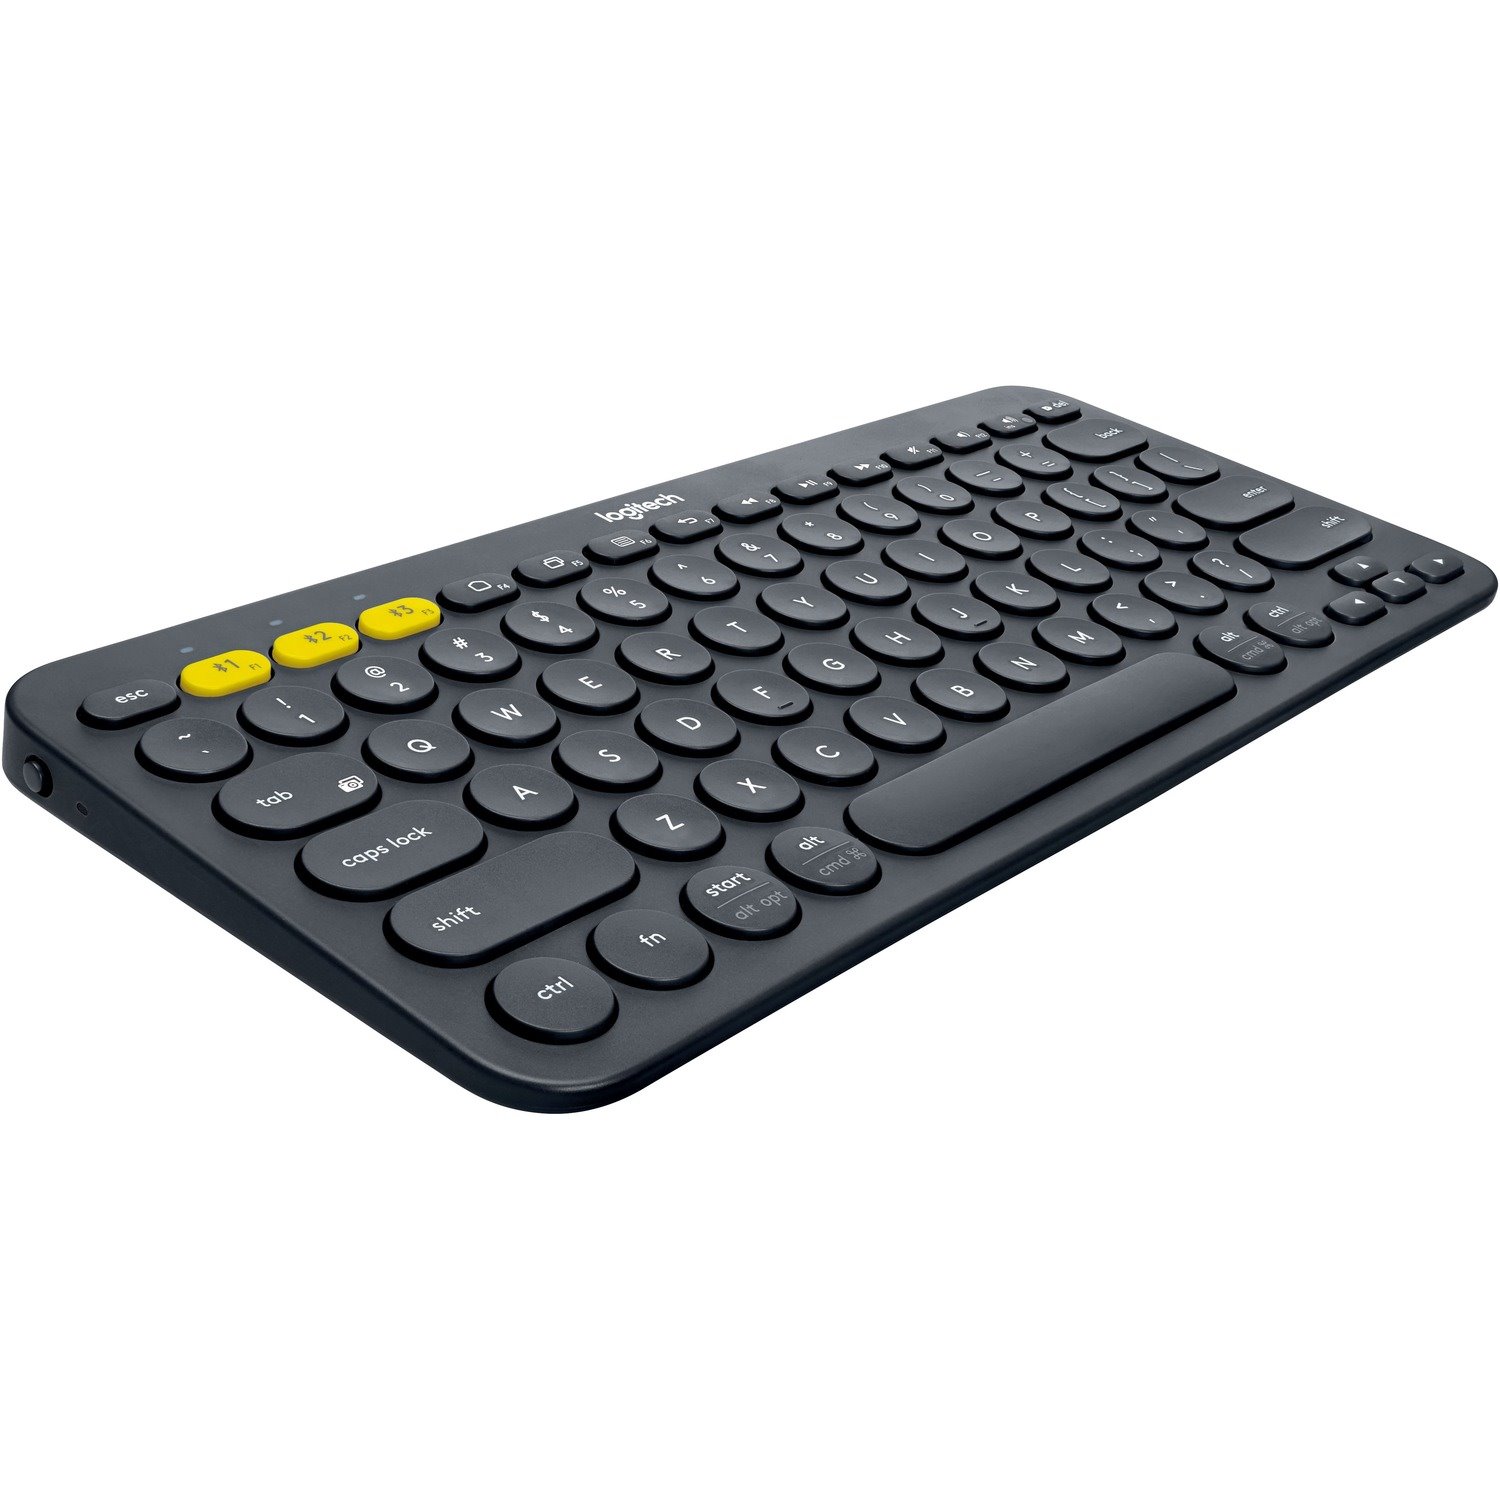 Logitech K380 Keyboard - Wireless Connectivity - English (UK) - QWERTY Layout - Black